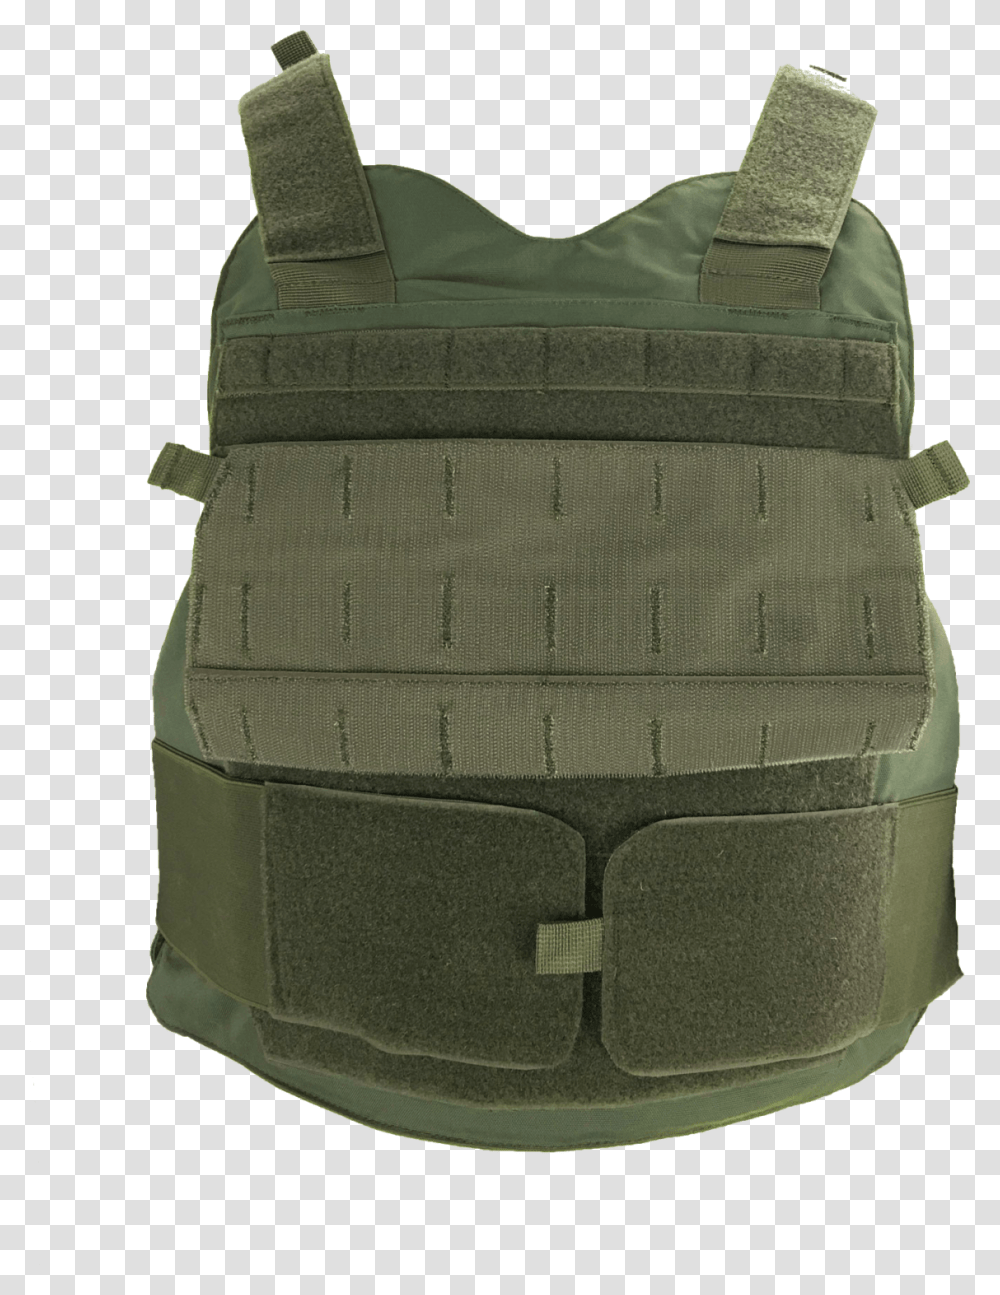 Messenger Bag, Vest, Helmet, Backpack Transparent Png